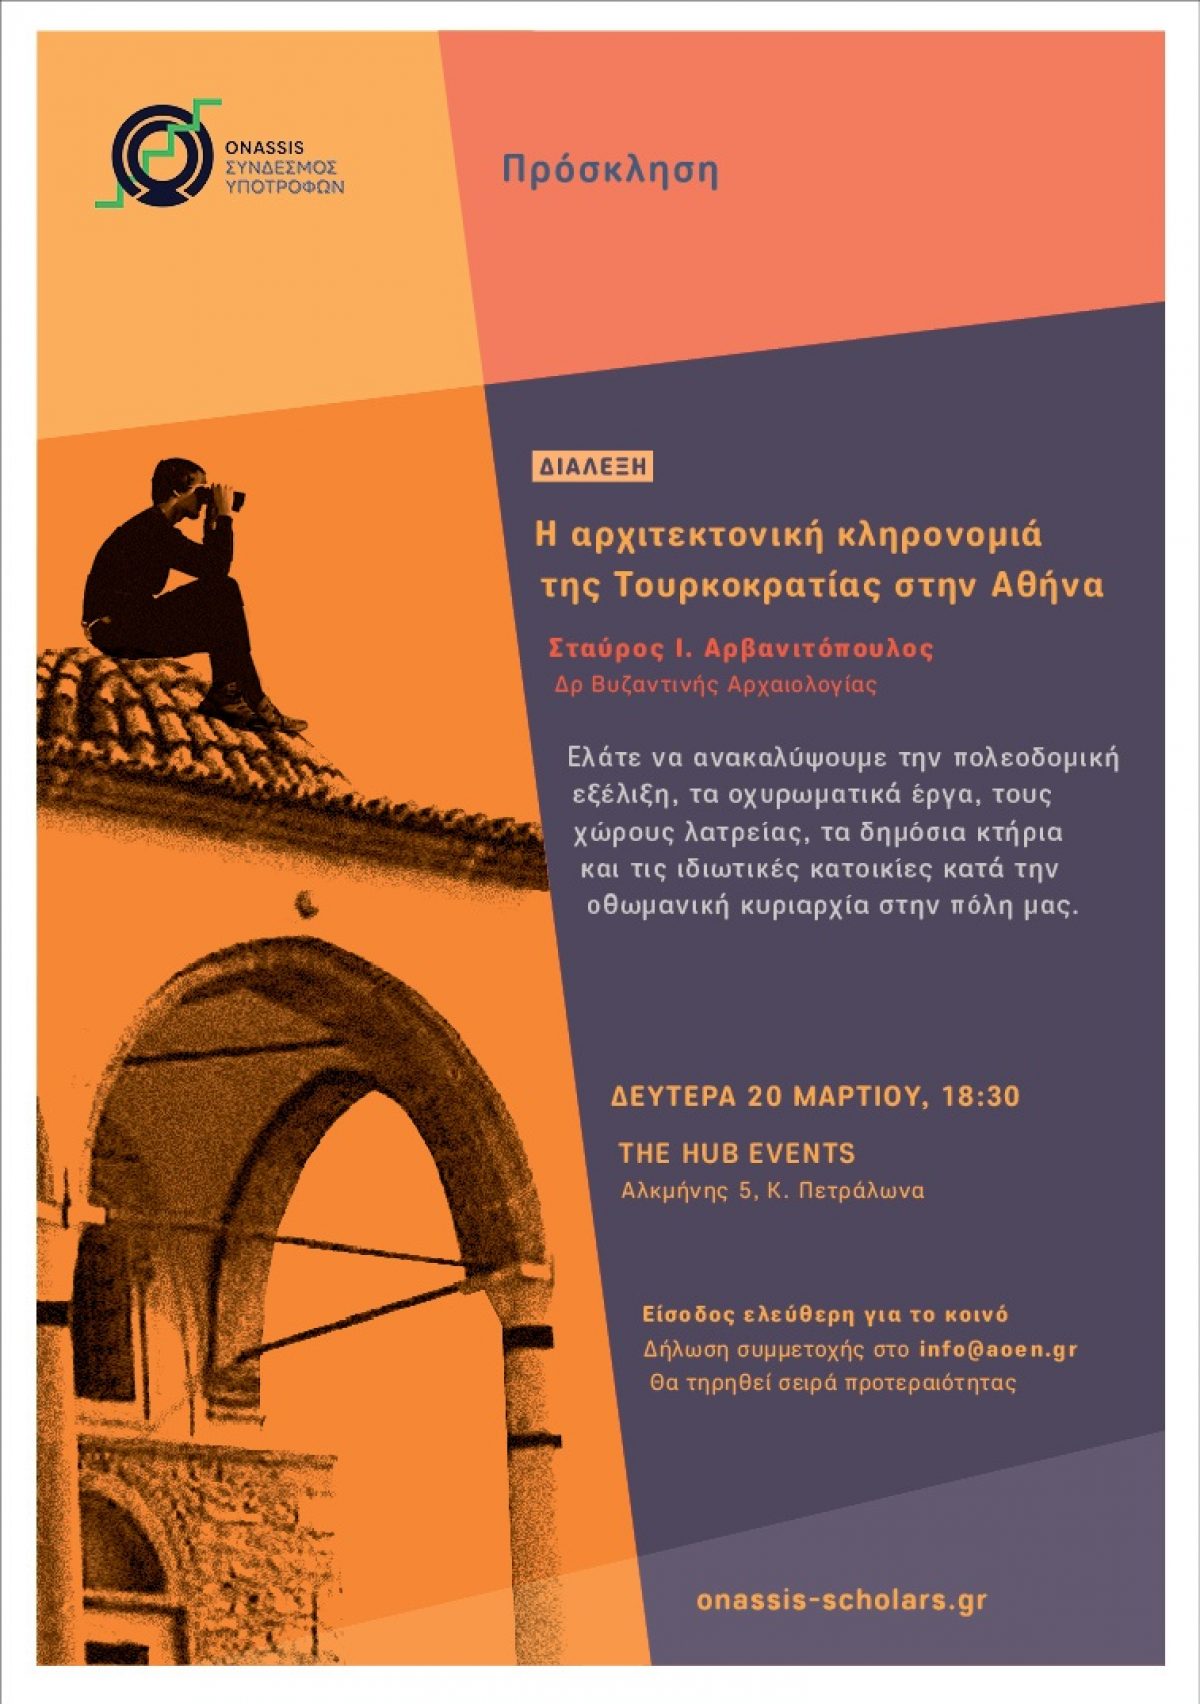 Διάλεξη “Η Αρχιτεκτονική Κληρονομιά επί Τουρκοκρατίας στην Αθήνα”, 20.3.2017